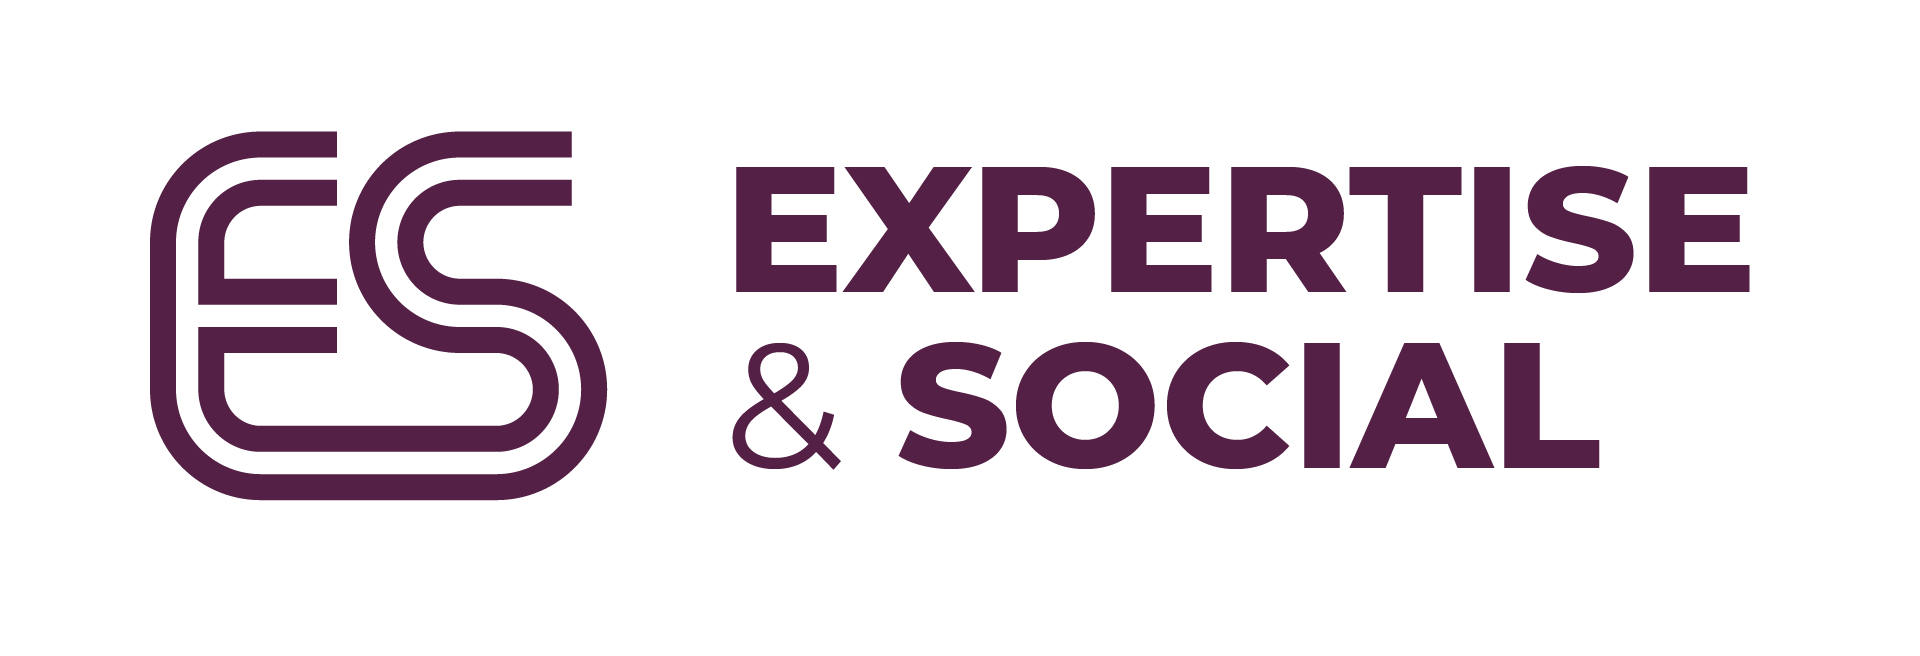 Expertise & Social